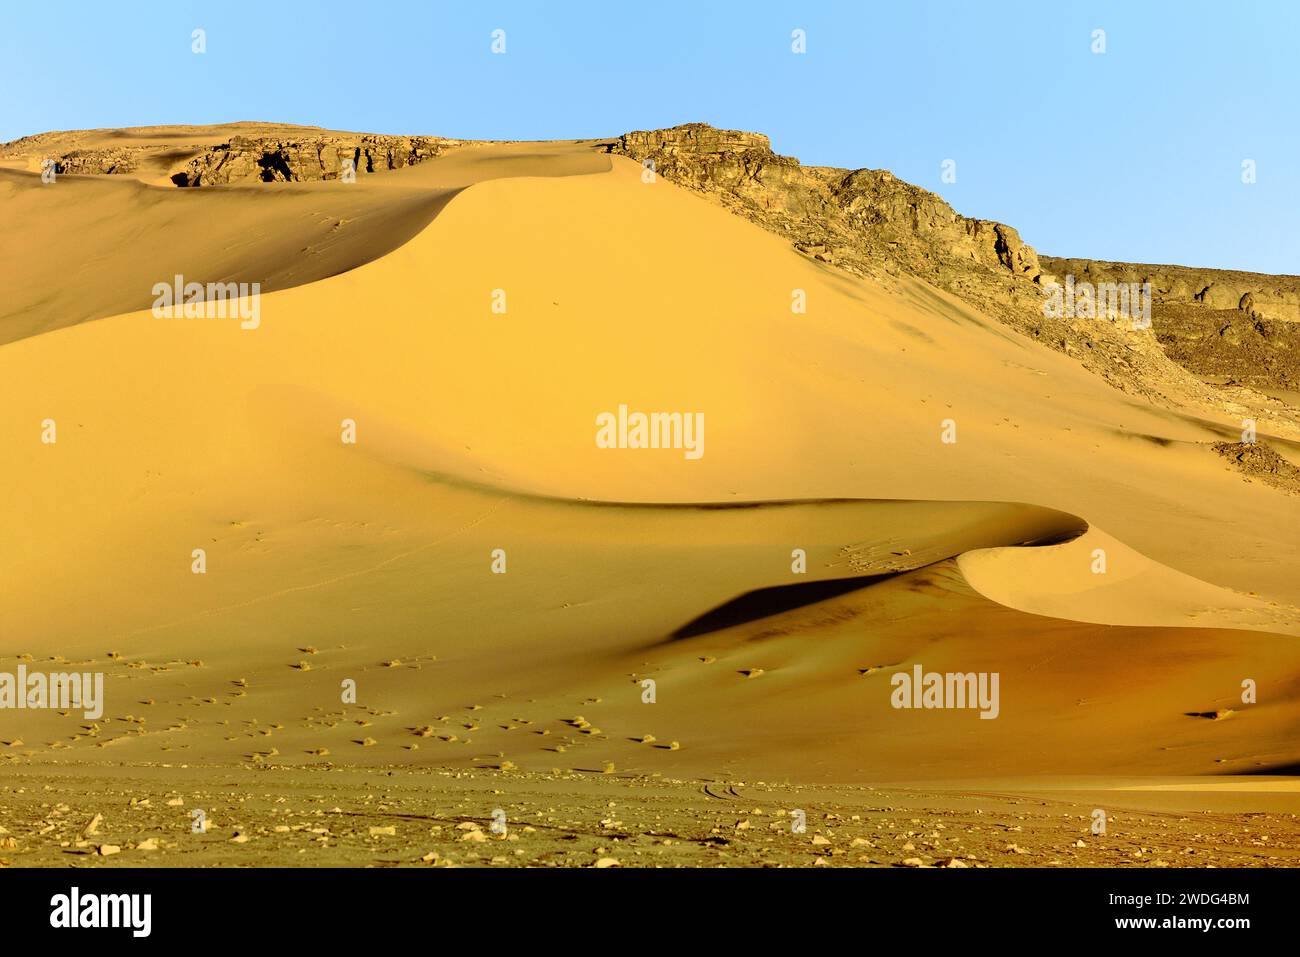 ALGERIA CON DUNE DI SABBIA NEL DESERTO DEL SAHARA INTORNO ALL'OASI DJANET Foto Stock